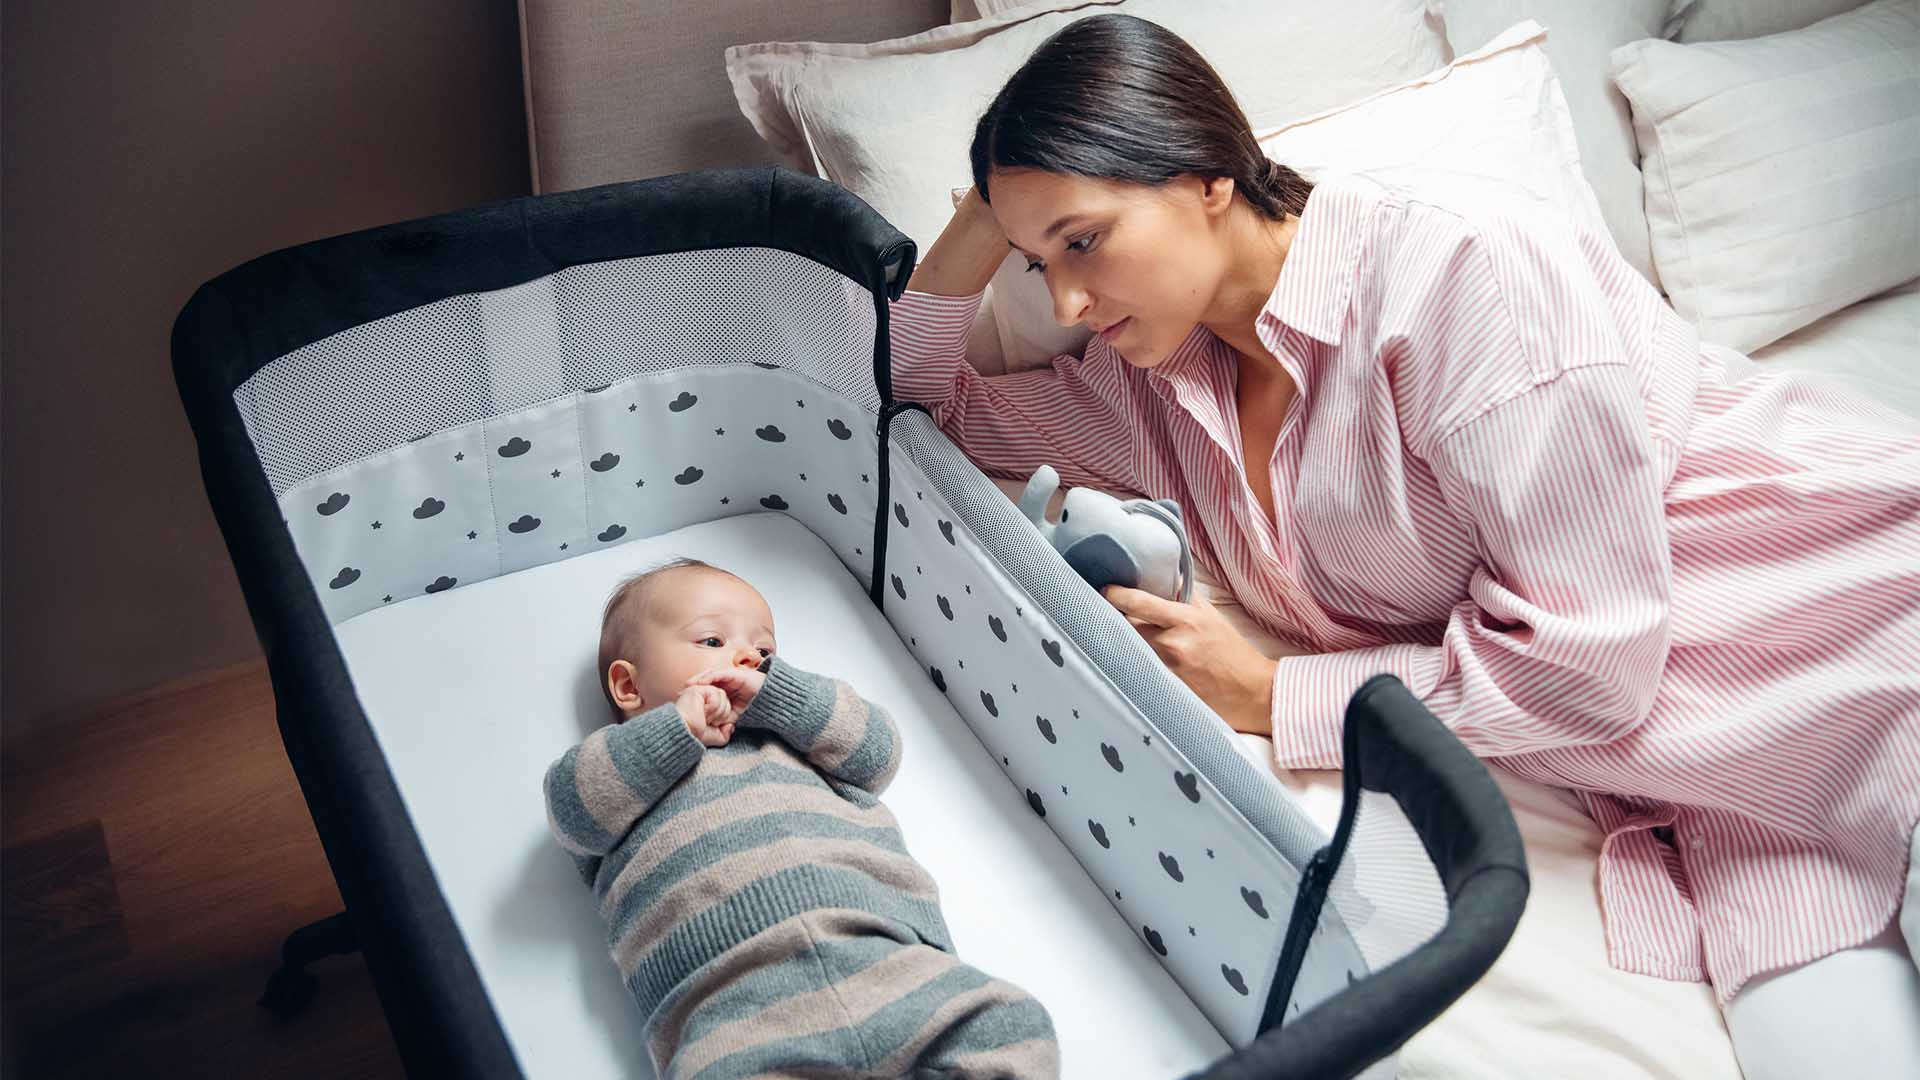 Lohnt es sich, eine Bettumrandung für ein Babybett zu kaufen?